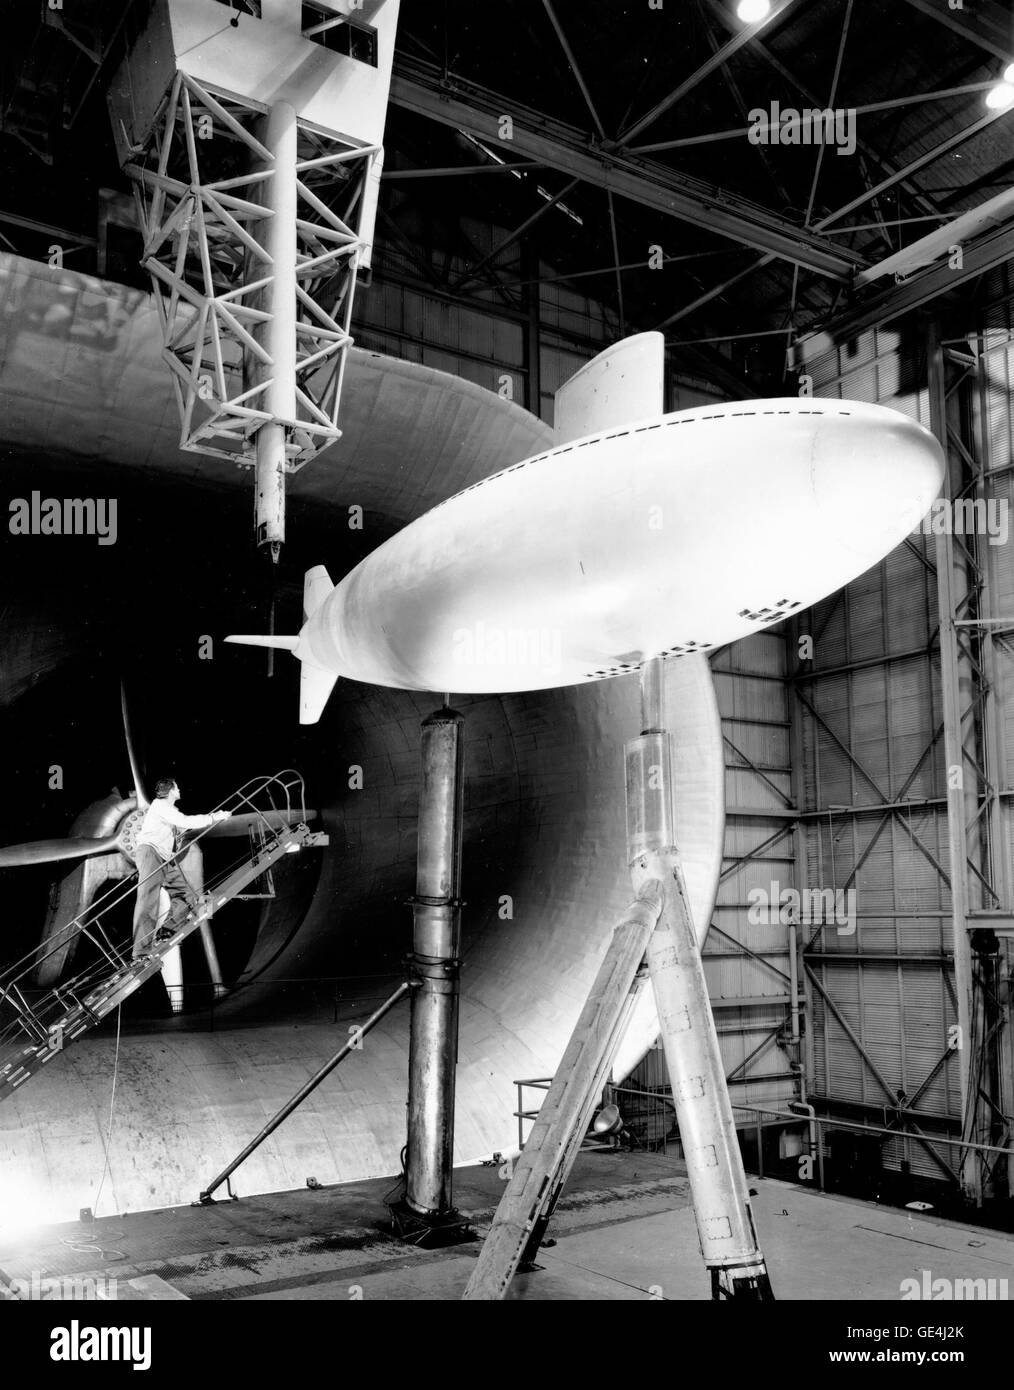 Nel 1950 Langley ha testato la trascina le caratteristiche di quella che allora era la più veloce del mondo sottomarino, il tonno bianco, nel 30 x 60 scala piena Tunnel. Acqua e aria sono entrambe sostanzialmente fluidi di diversa densità. L'aria ad alta velocità è in grado di simulare acqua viaggia a velocità inferiore per molti scopi. Foto Stock